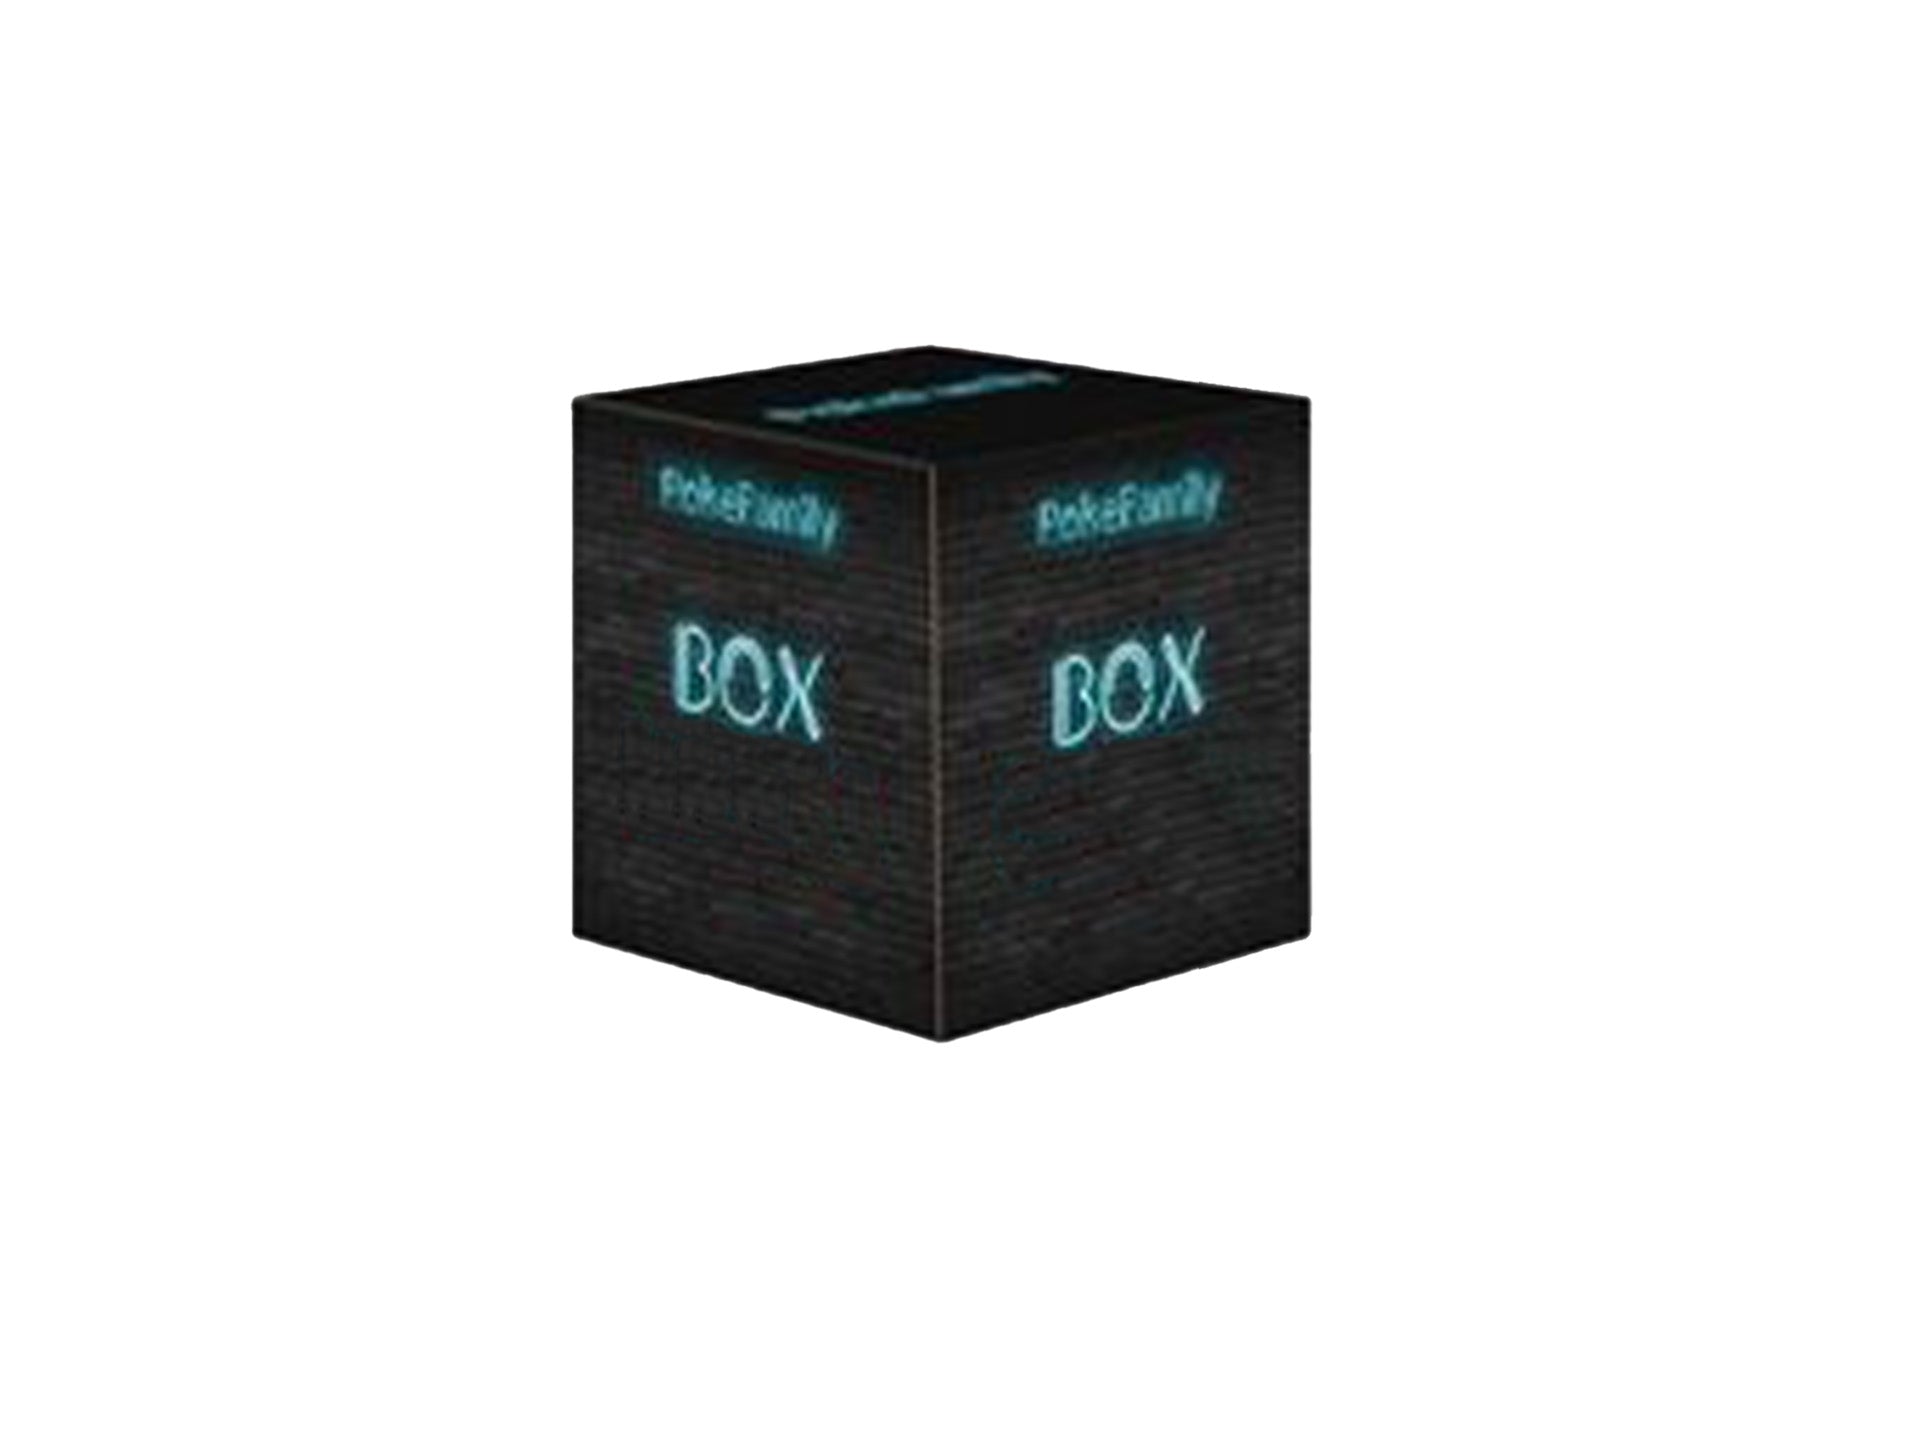 Poke Family Box